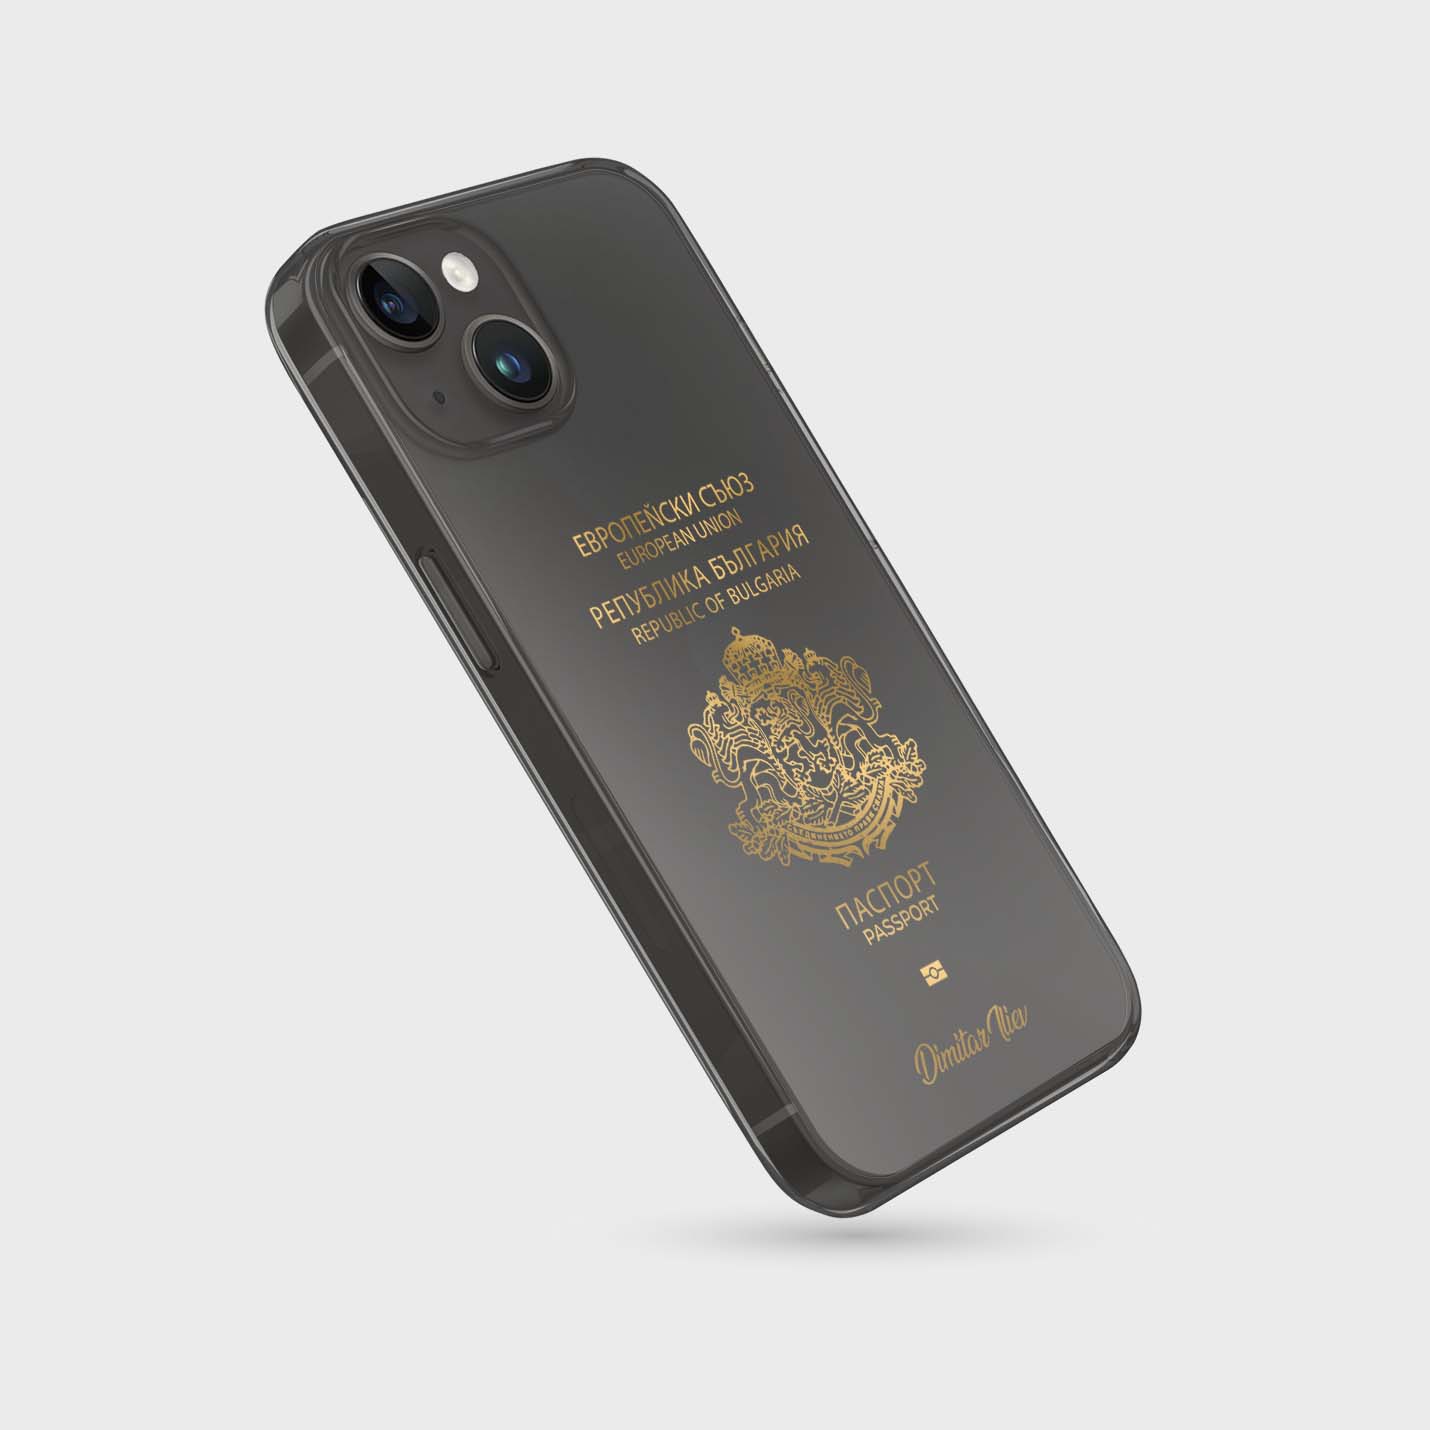 Handyhüllen mit Reisepass - Bulgarien - 1instaphone